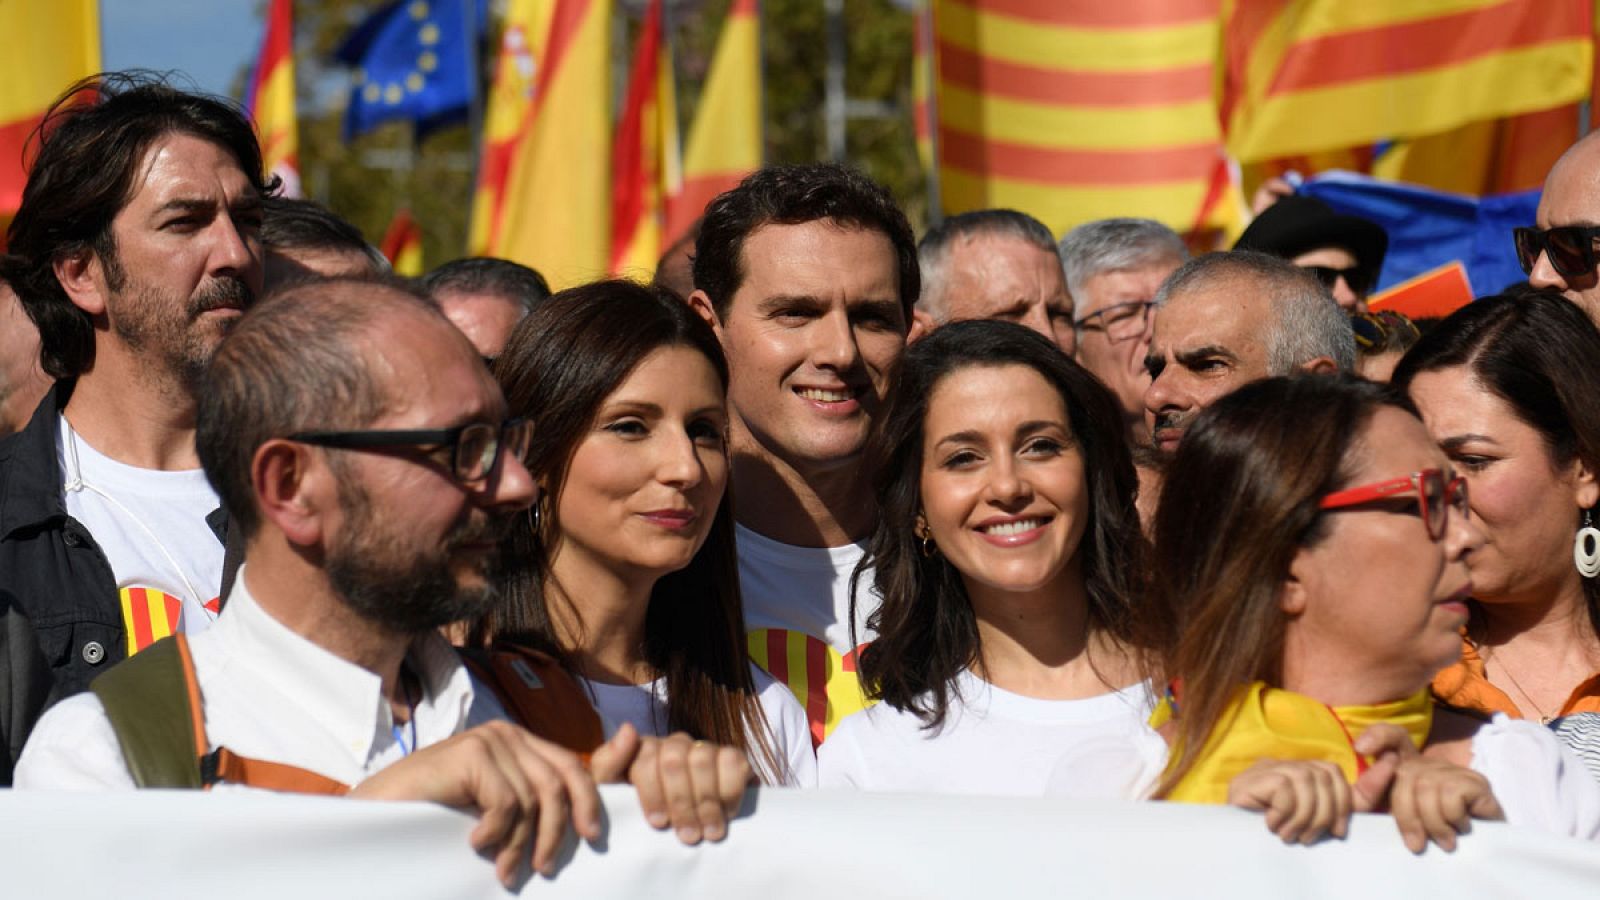 Cataluña: Rivera reinvindica "la unidad" ante "los que quieren romper" España 